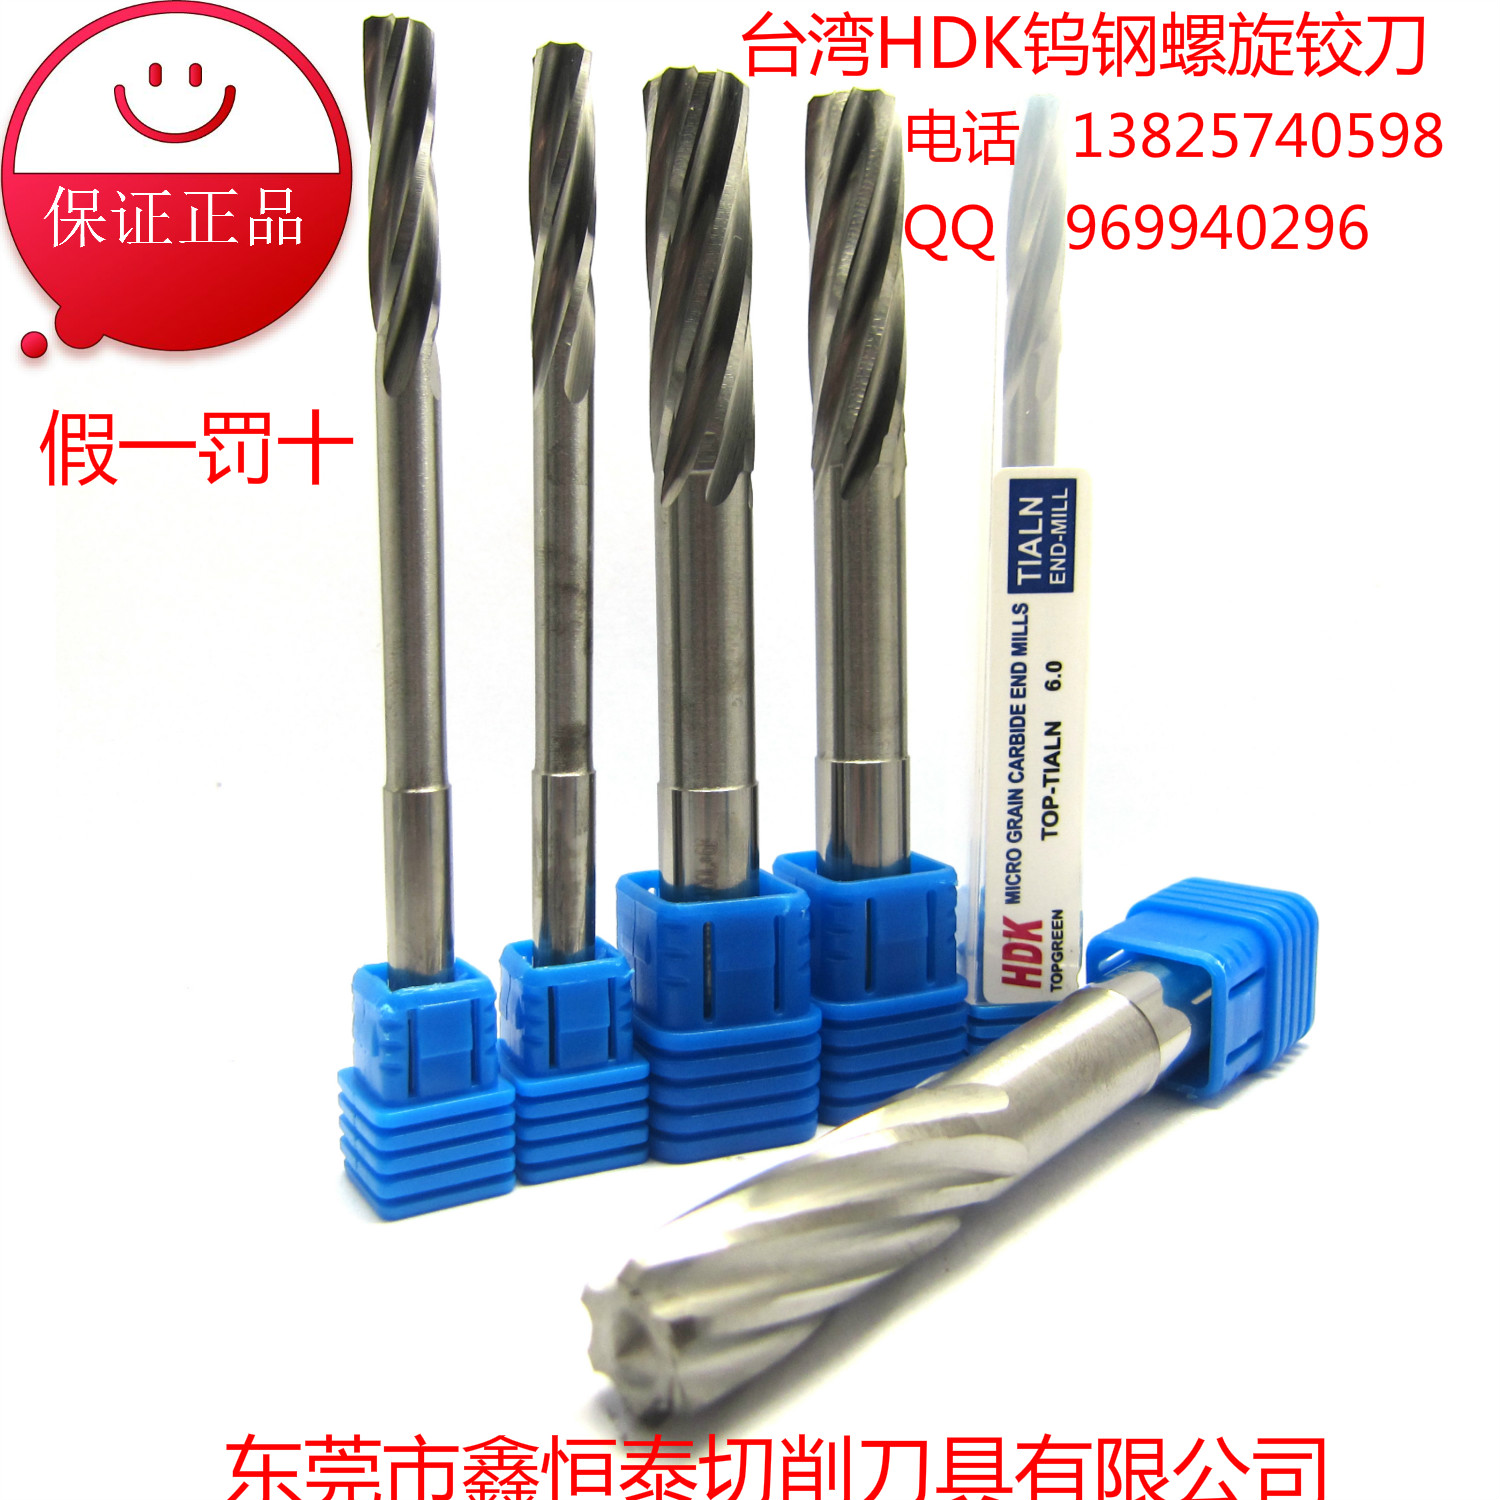 进口台湾HDK钨钢铰刀机用铰刀螺旋铰刀合金铰刀55度铰刀定做